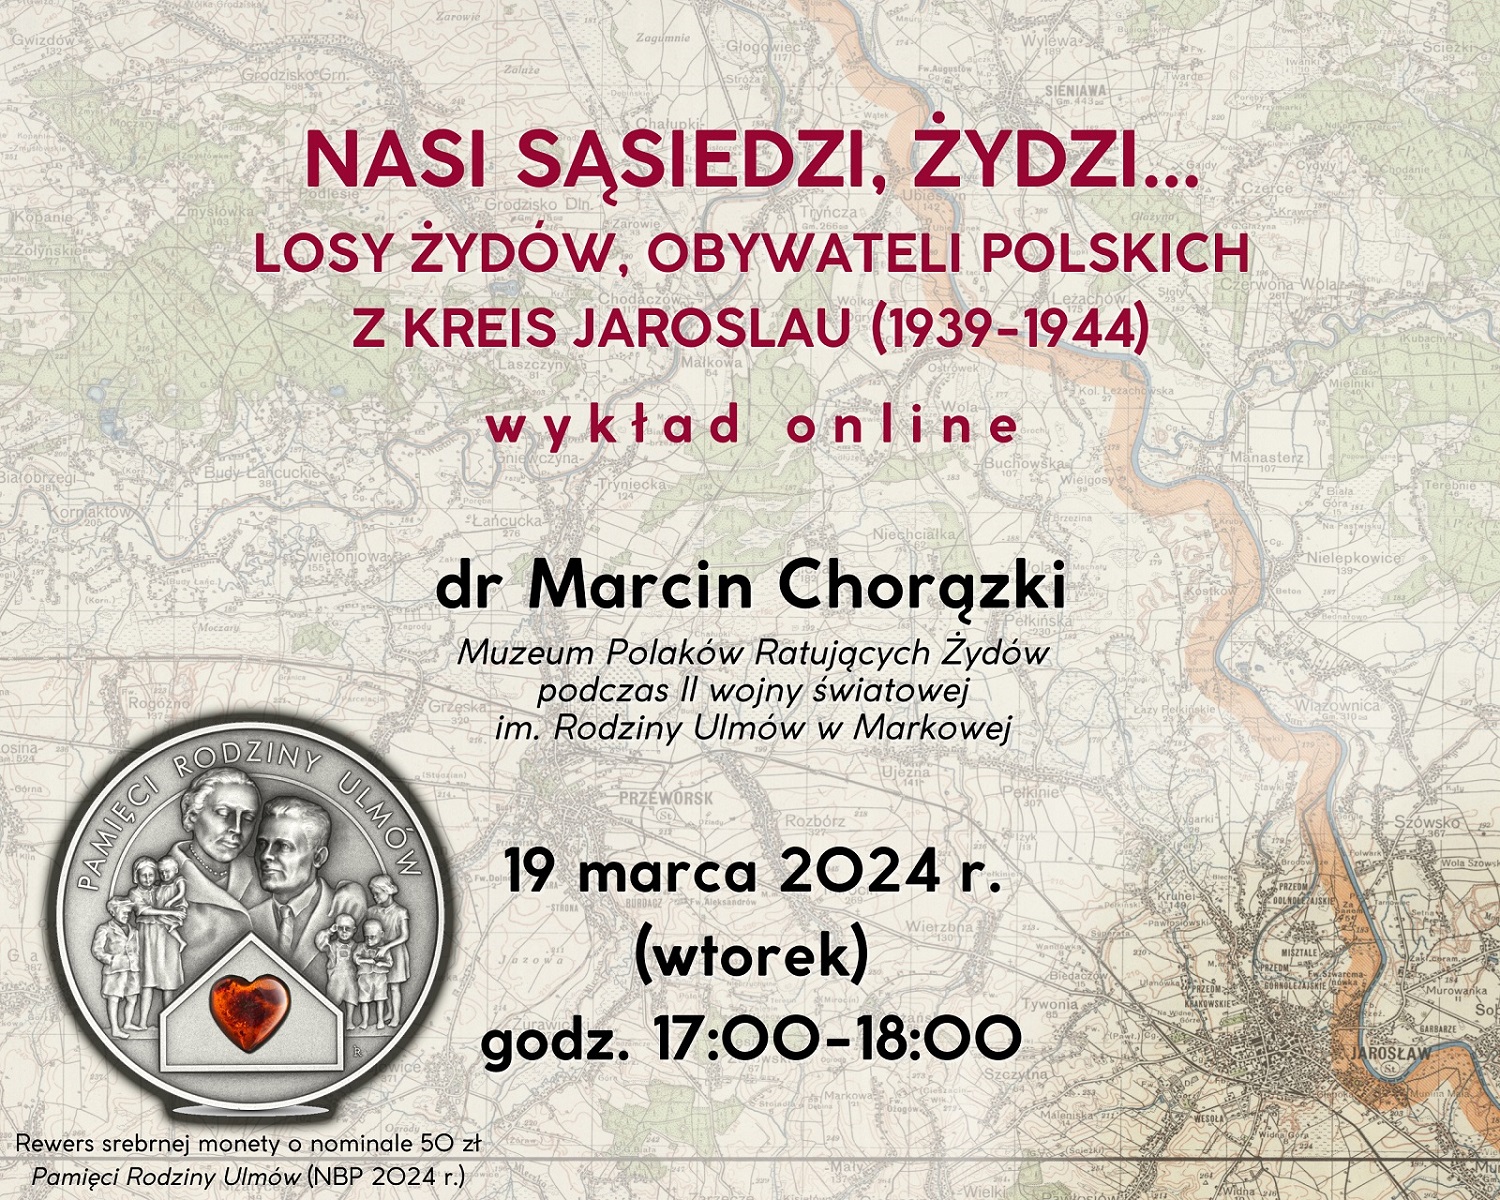 Plakat zapraszający na wykład. Ilustracją jest mapa okolic Jarosławia. W lewym dolnym rogu zdjęcie monety zatytułowanej: Pamięci Rodziny Ulmów.